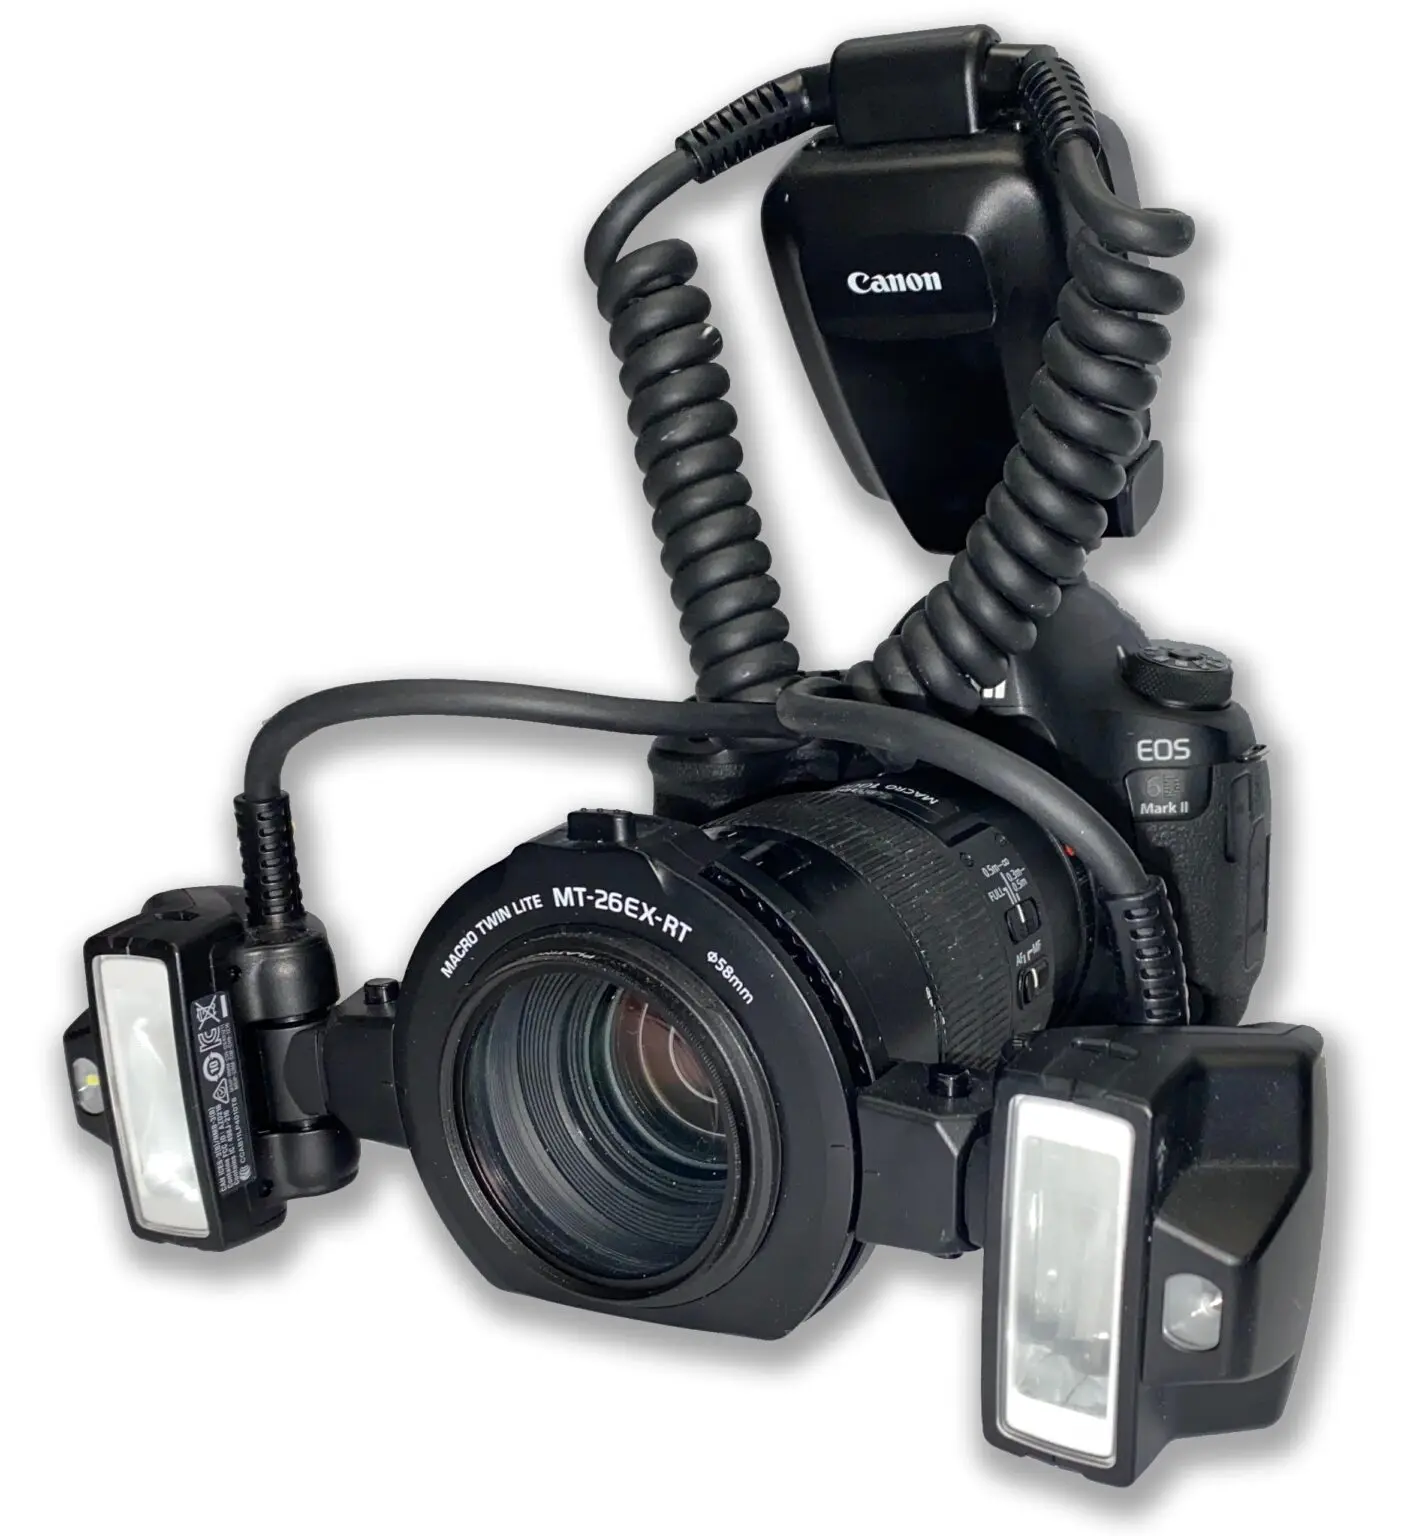 Dr Berlin's Premier Full Frame Canon Digital SLR Dental Camera system